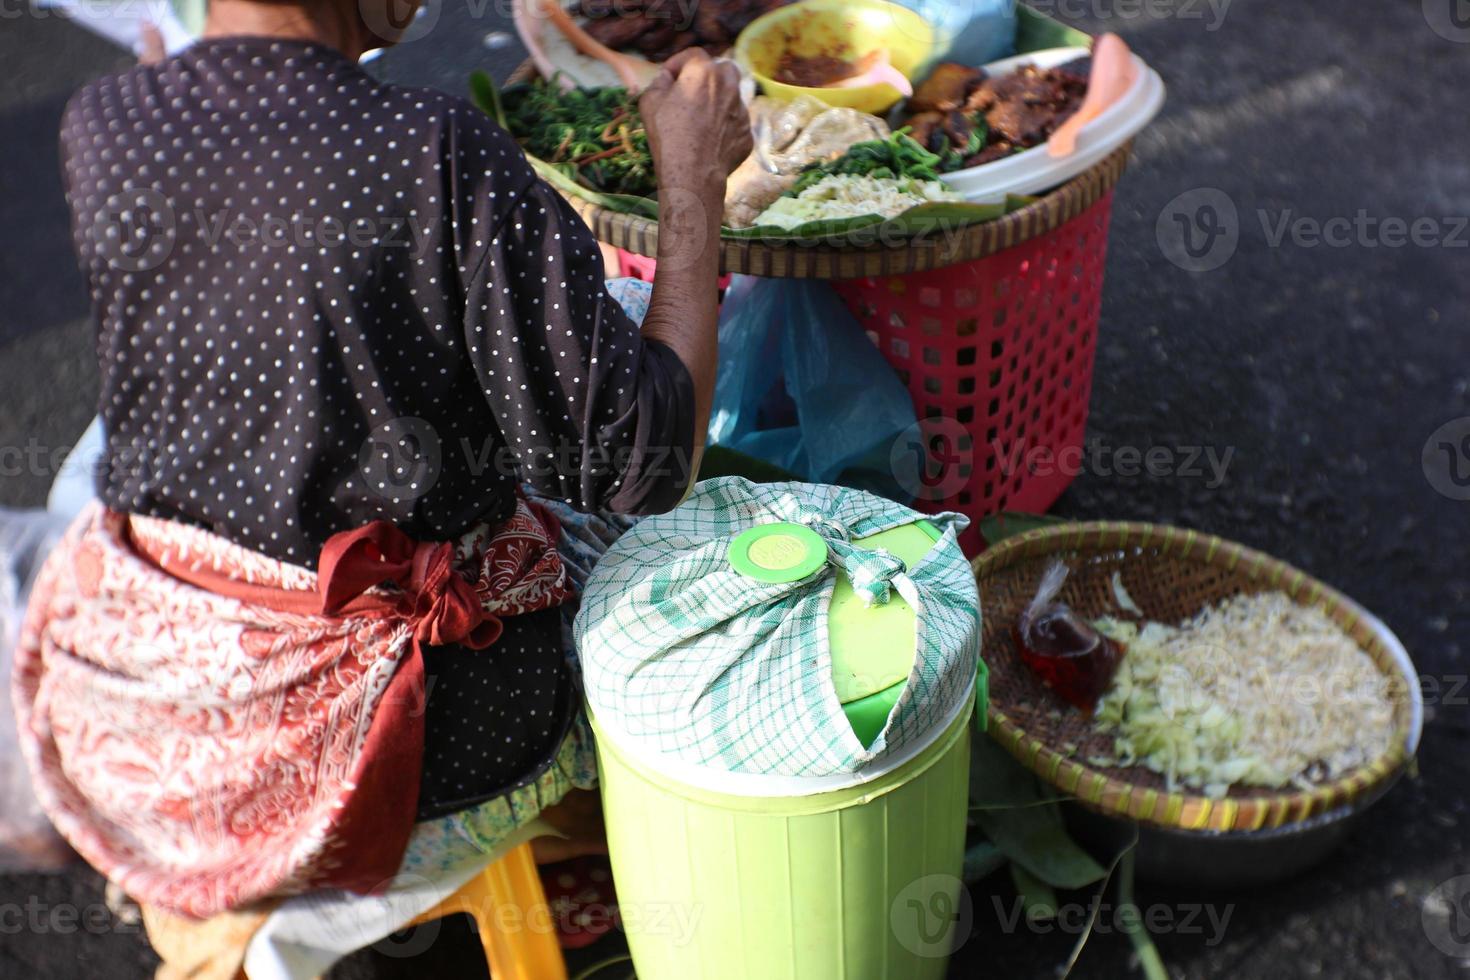 vendeur de riz pecel sans table, le riz pecel est du riz avec divers légumes et une sauce aux arachides sucrée et épicée photo